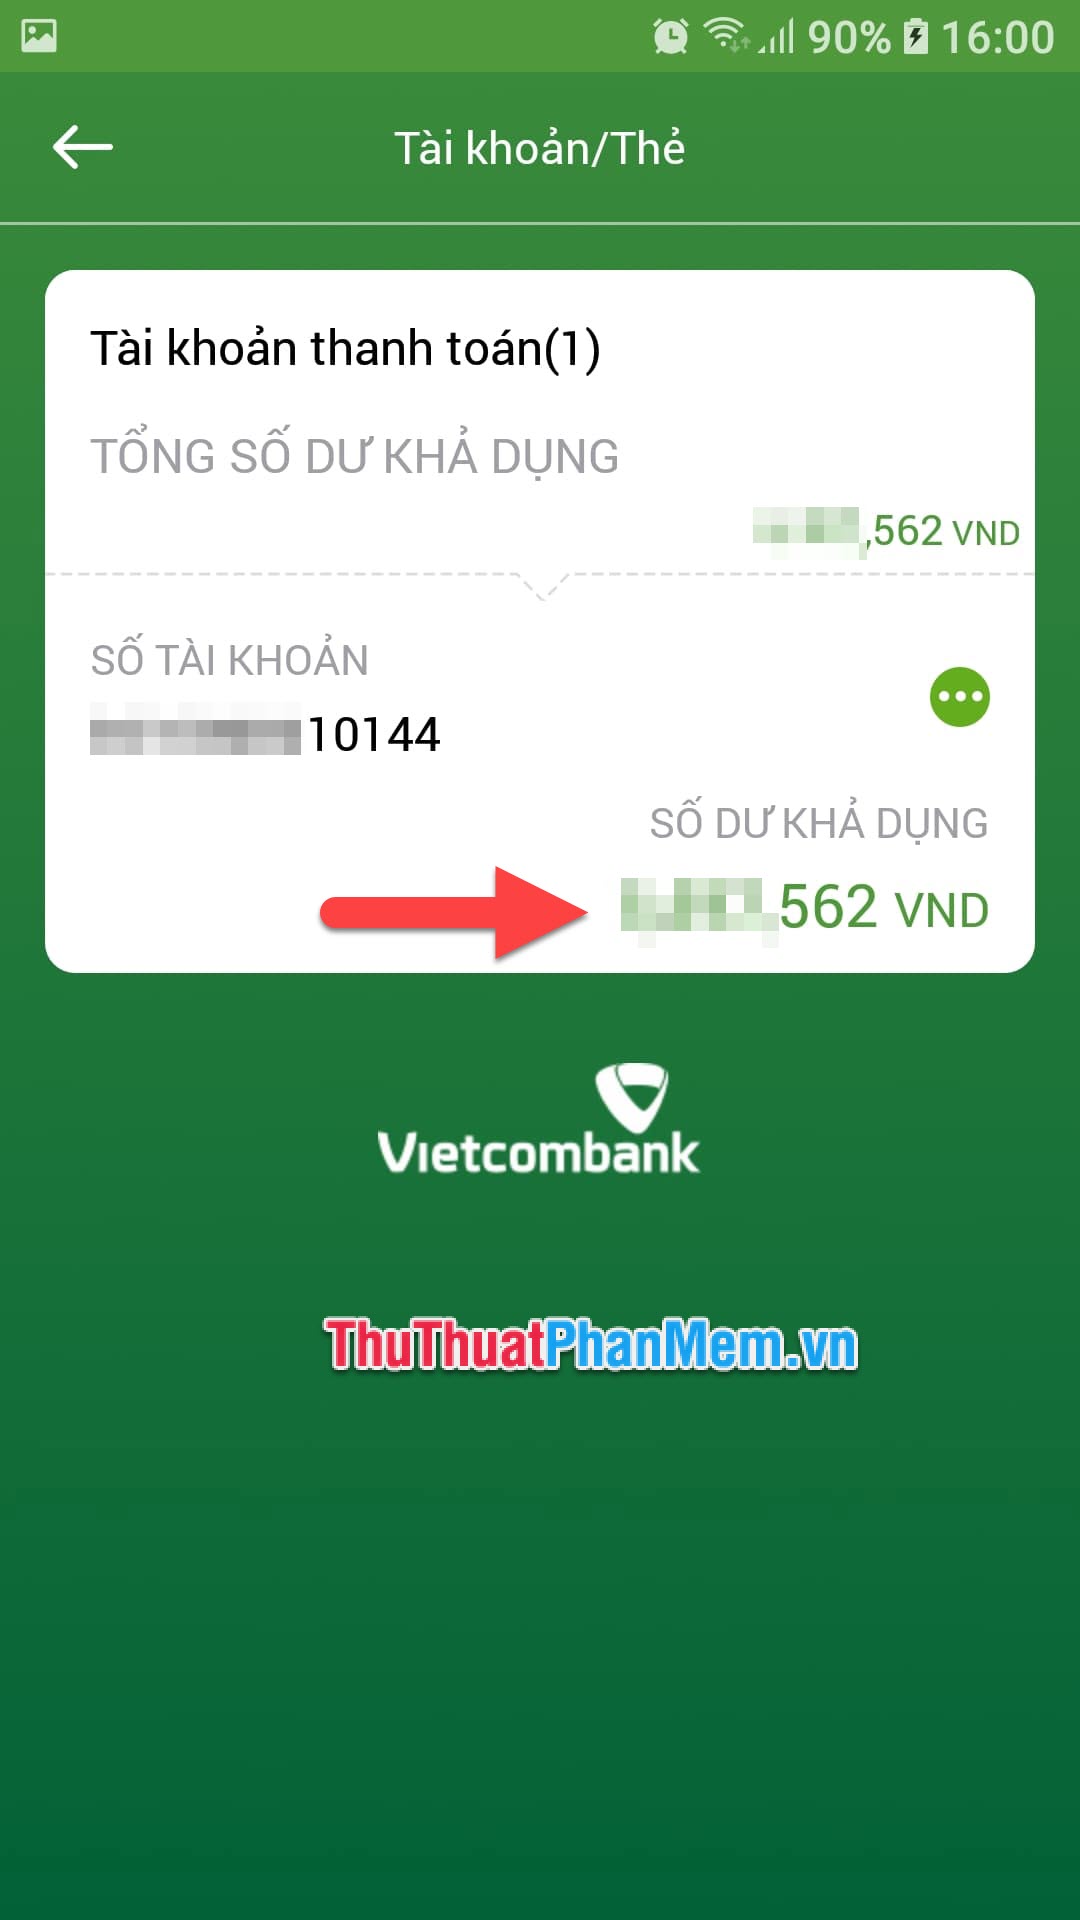 Bạn có thể xem số dư tài khoản Vietcombank của mình